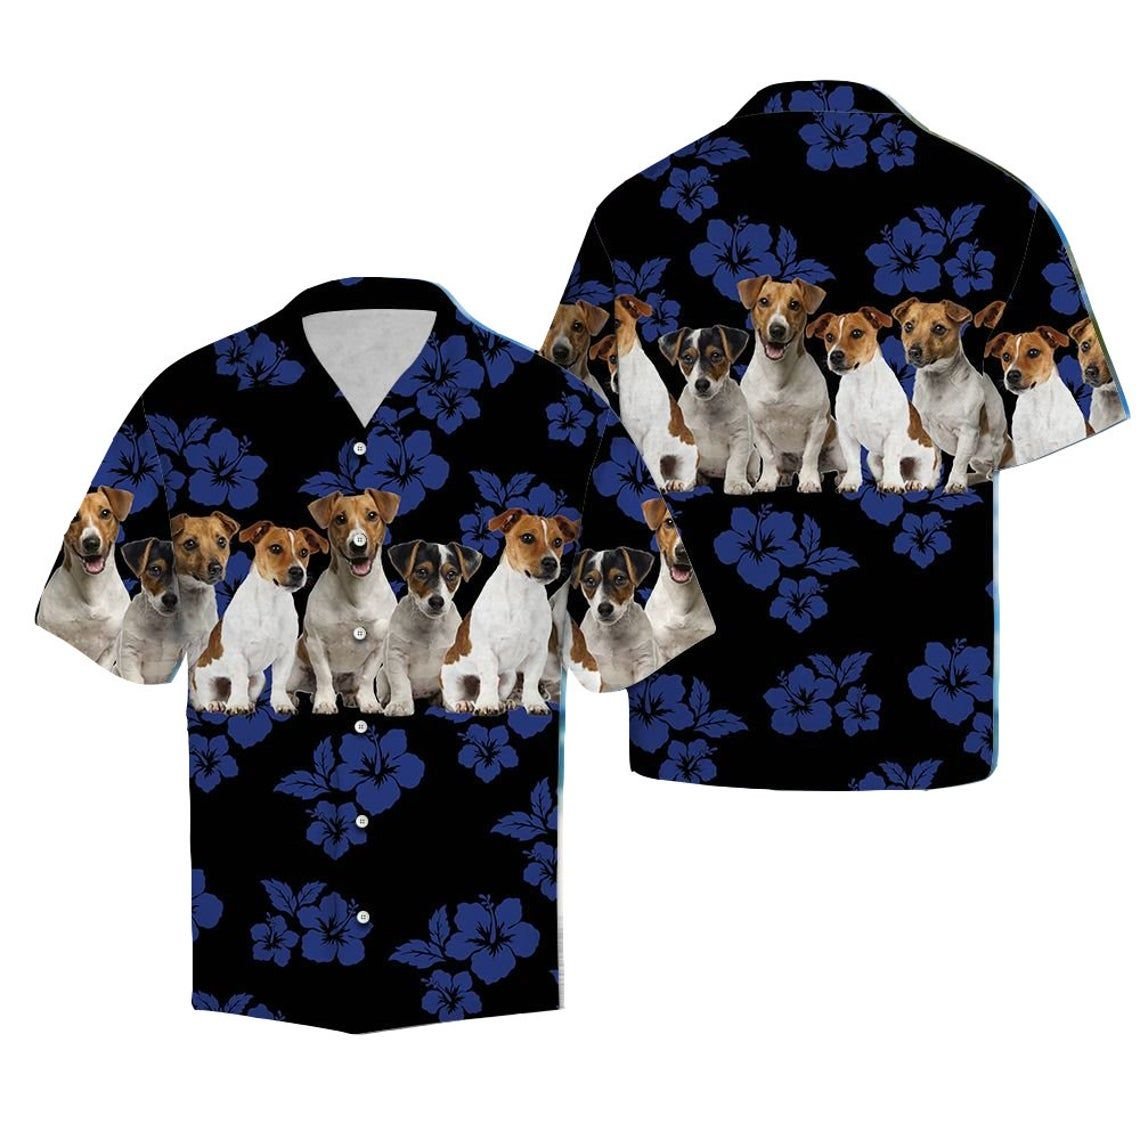 Jack Russell Terrier Black Hawaiian Shirt Style: Short Sleeve Hawaiian Shirt, Color: Black